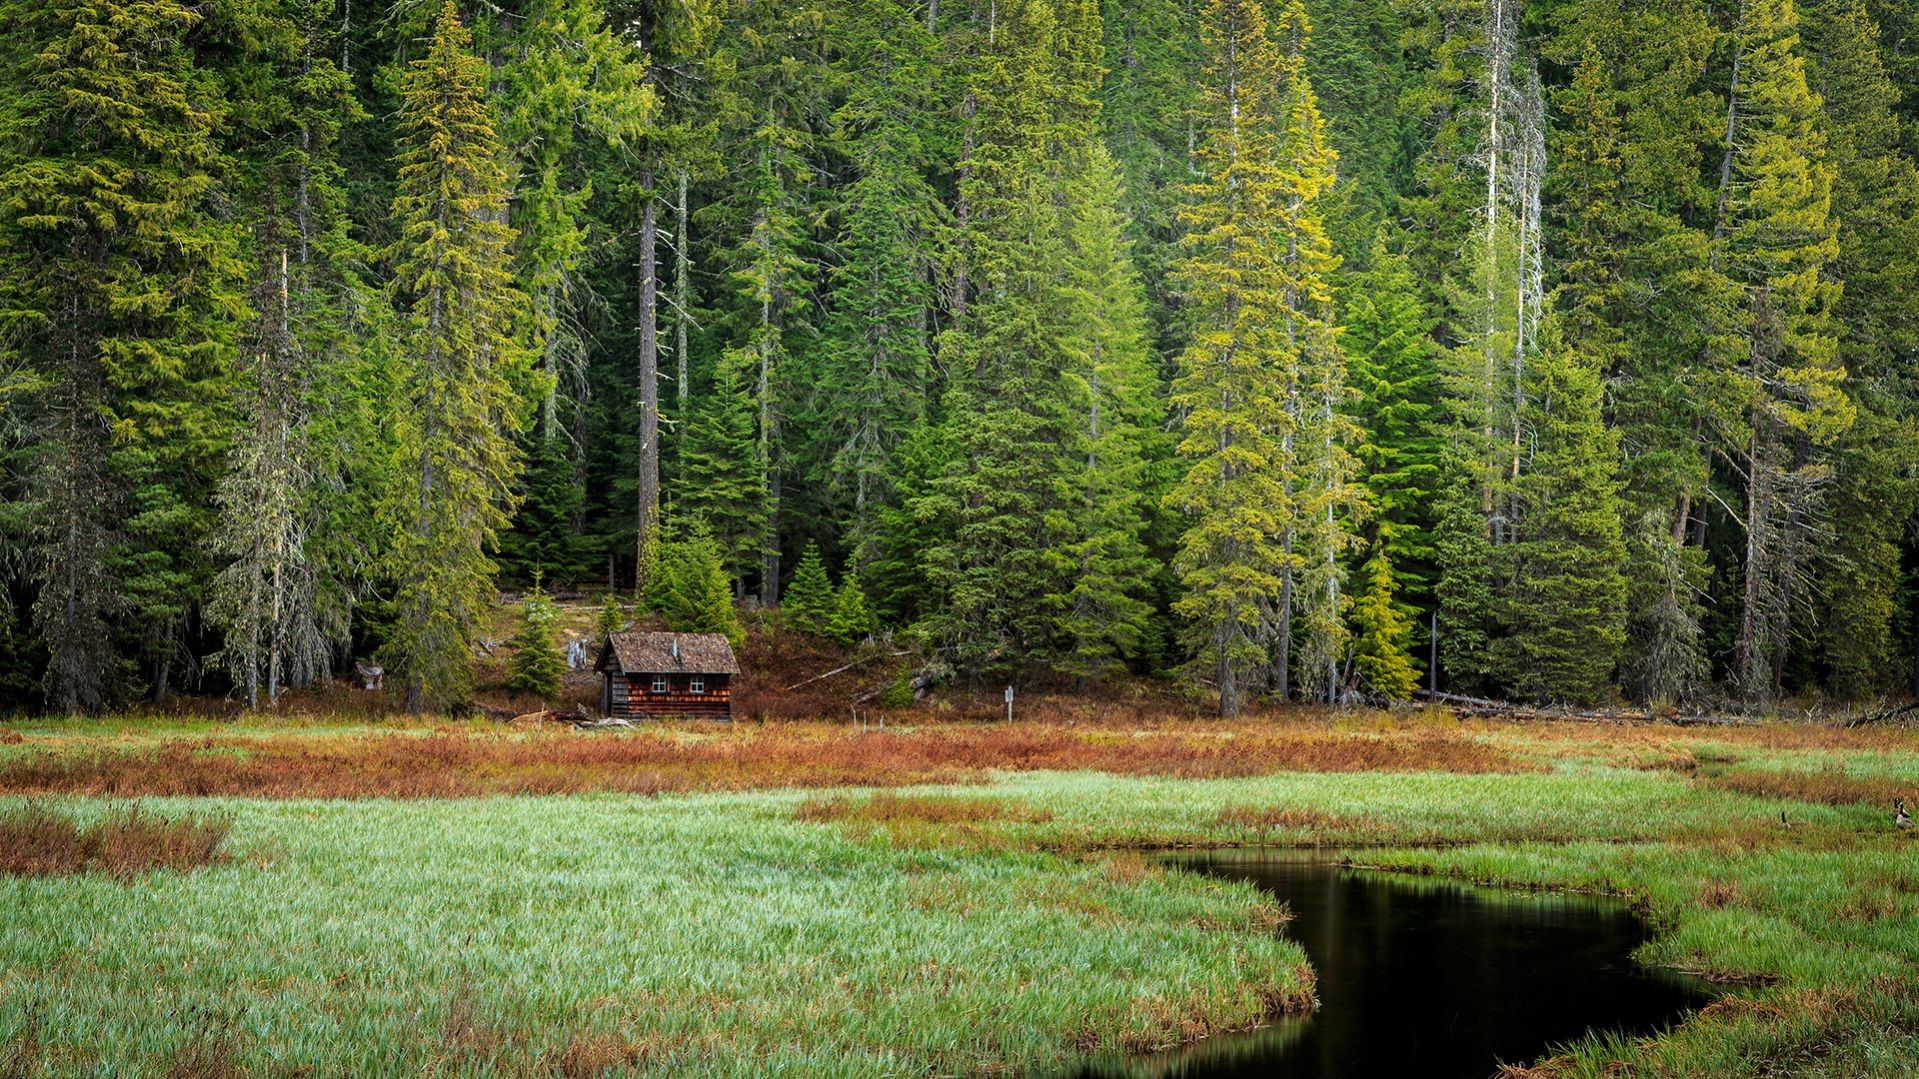 General 1919x1079 Oregon cabin nature landscape forest USA